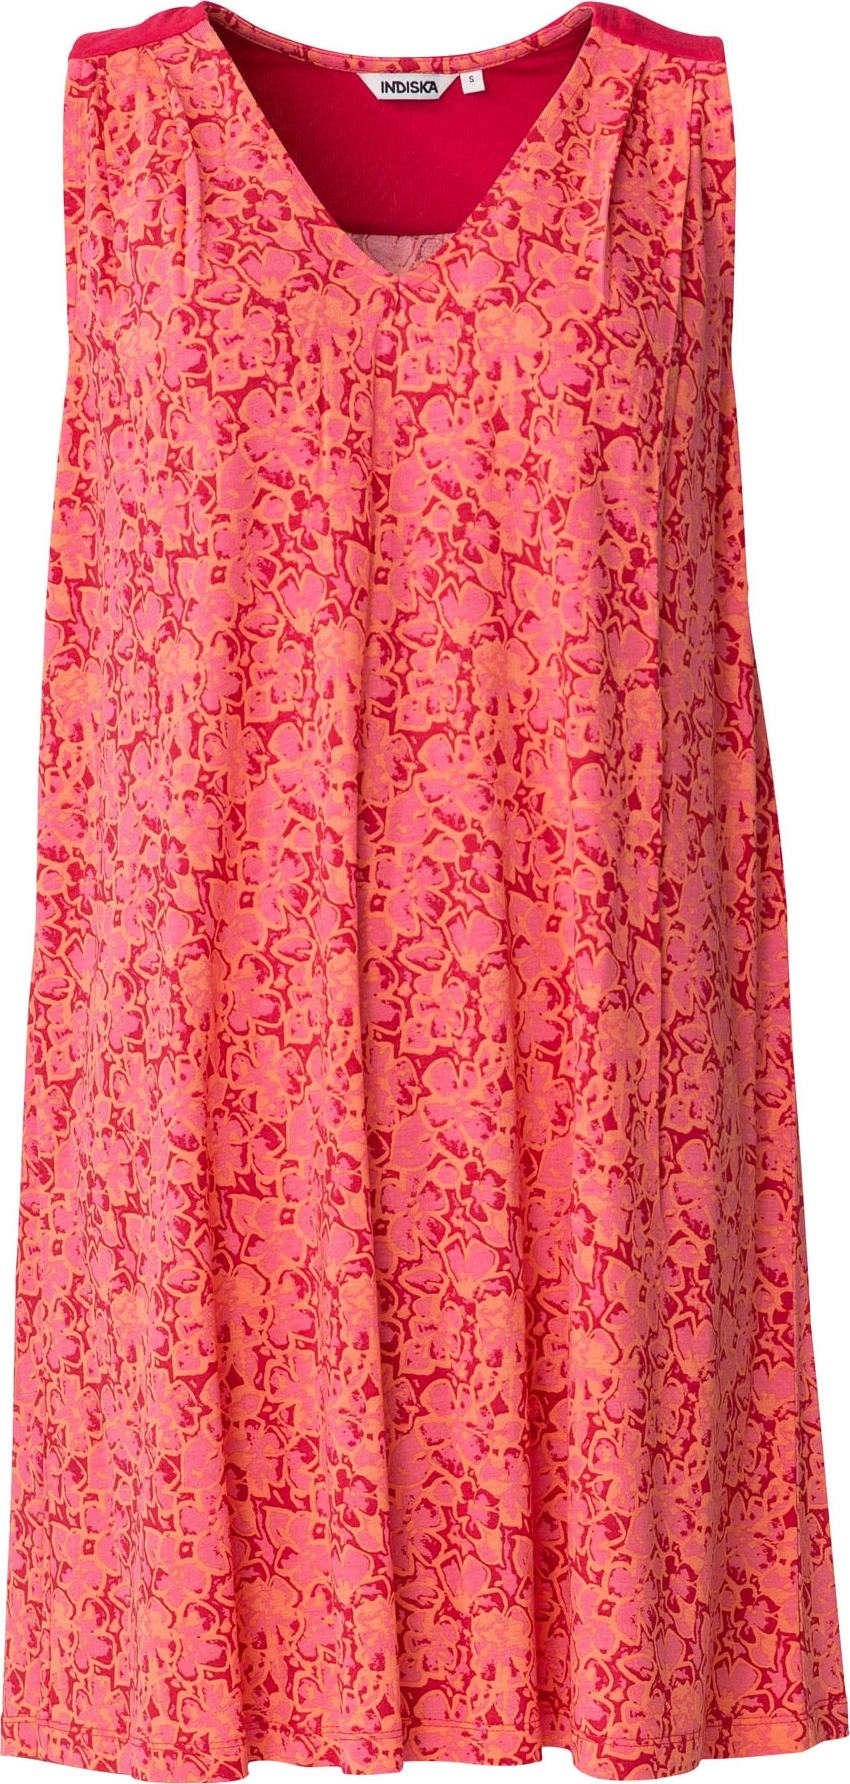 Indiska Letní šaty 'Donatella' písková / světle růžová / červená